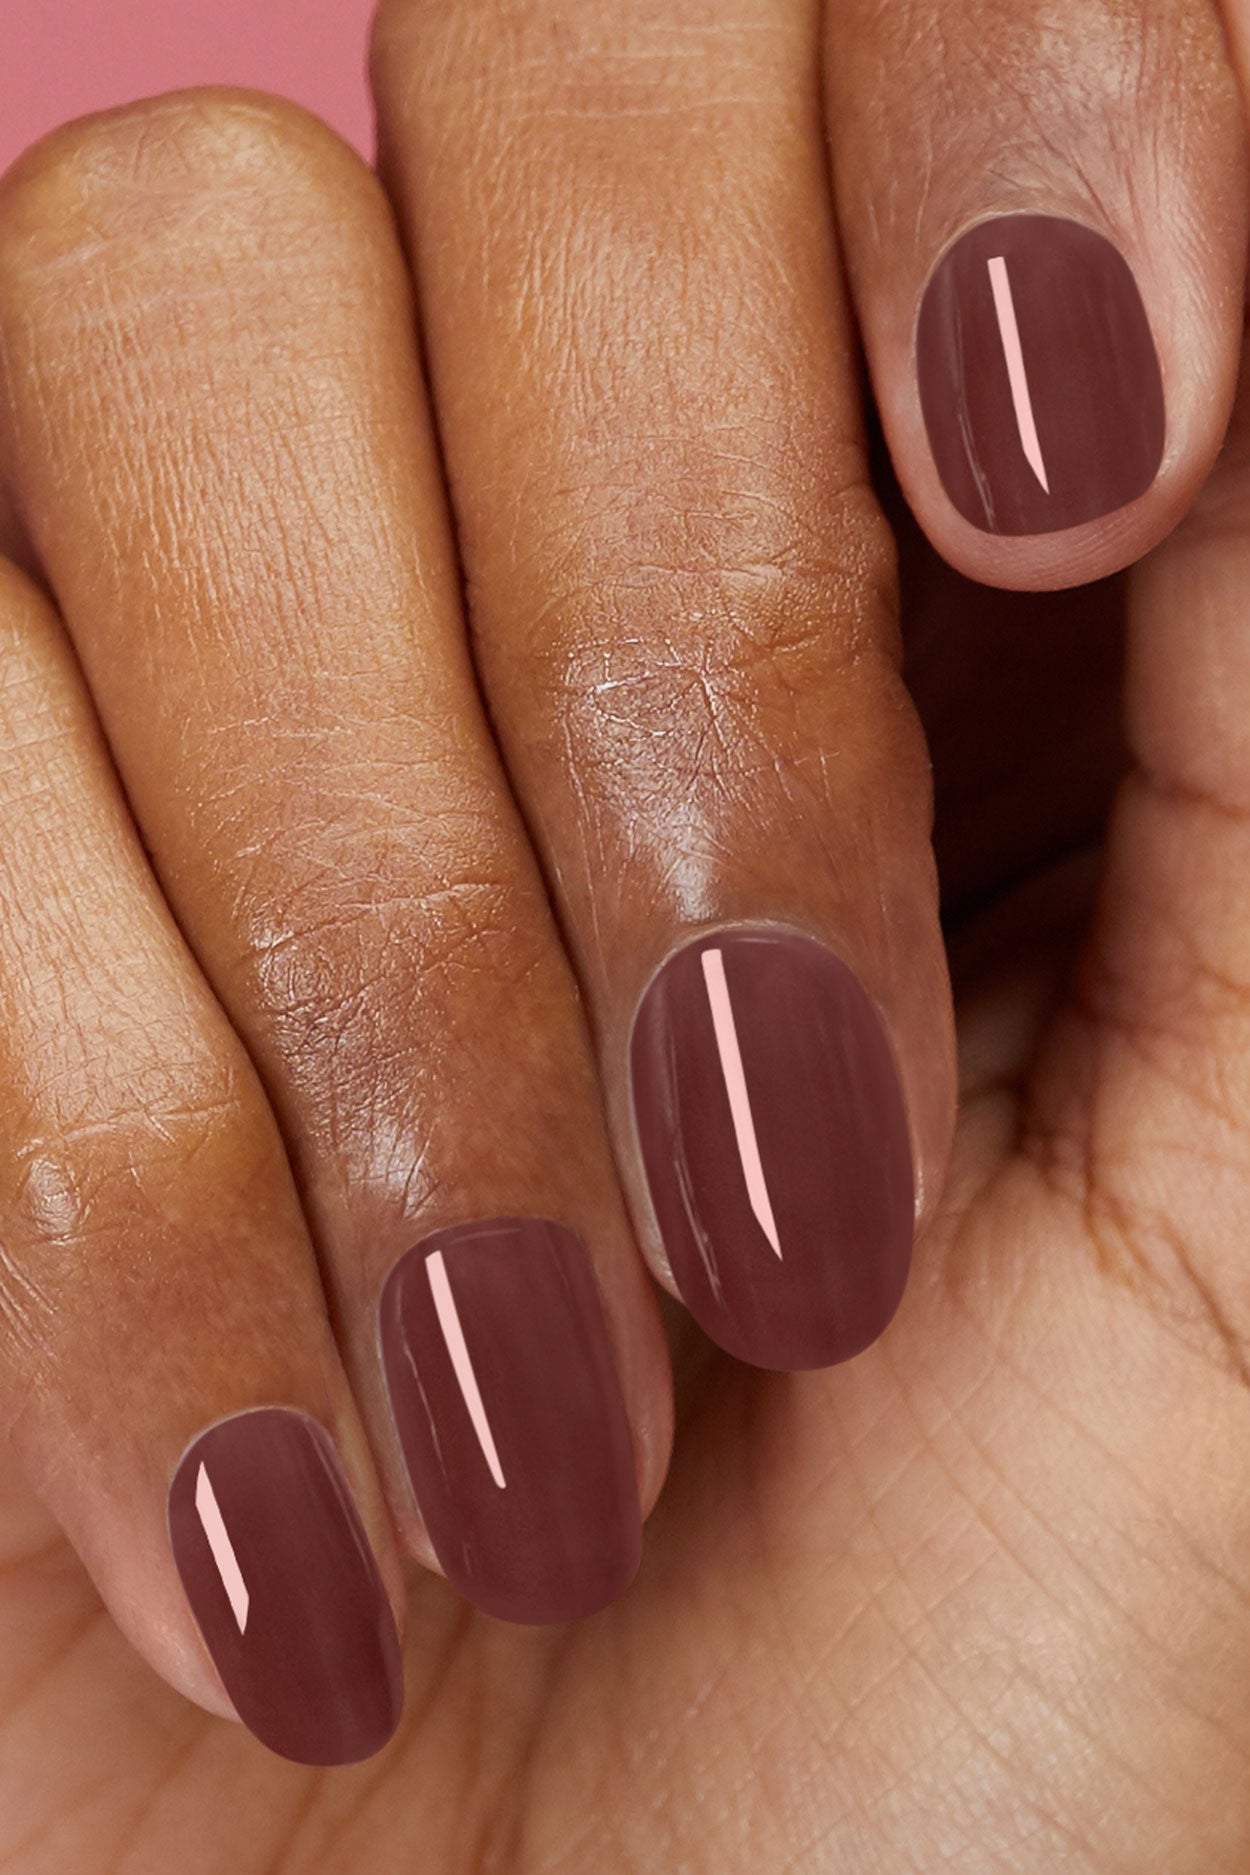 Chocolate brown gel nails 🍫 | Gel nails, Gel nail colors, Acrylic nail  shapes